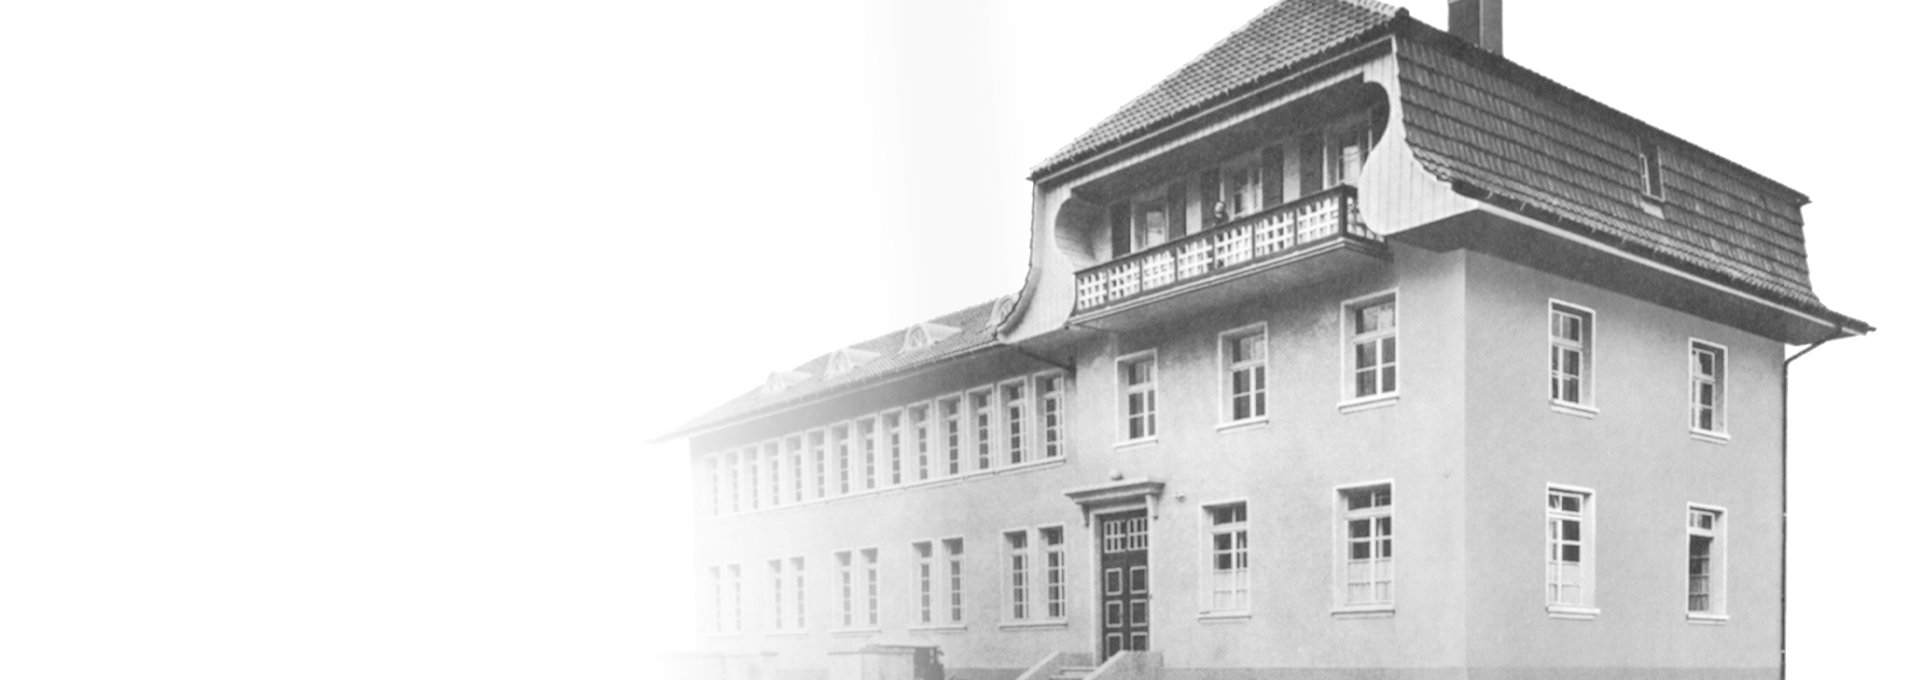 Antigua foto en blanco y negro de la primera fábrica de Bernafon en Flamatt, cerca de Berna, Suiza, 1925